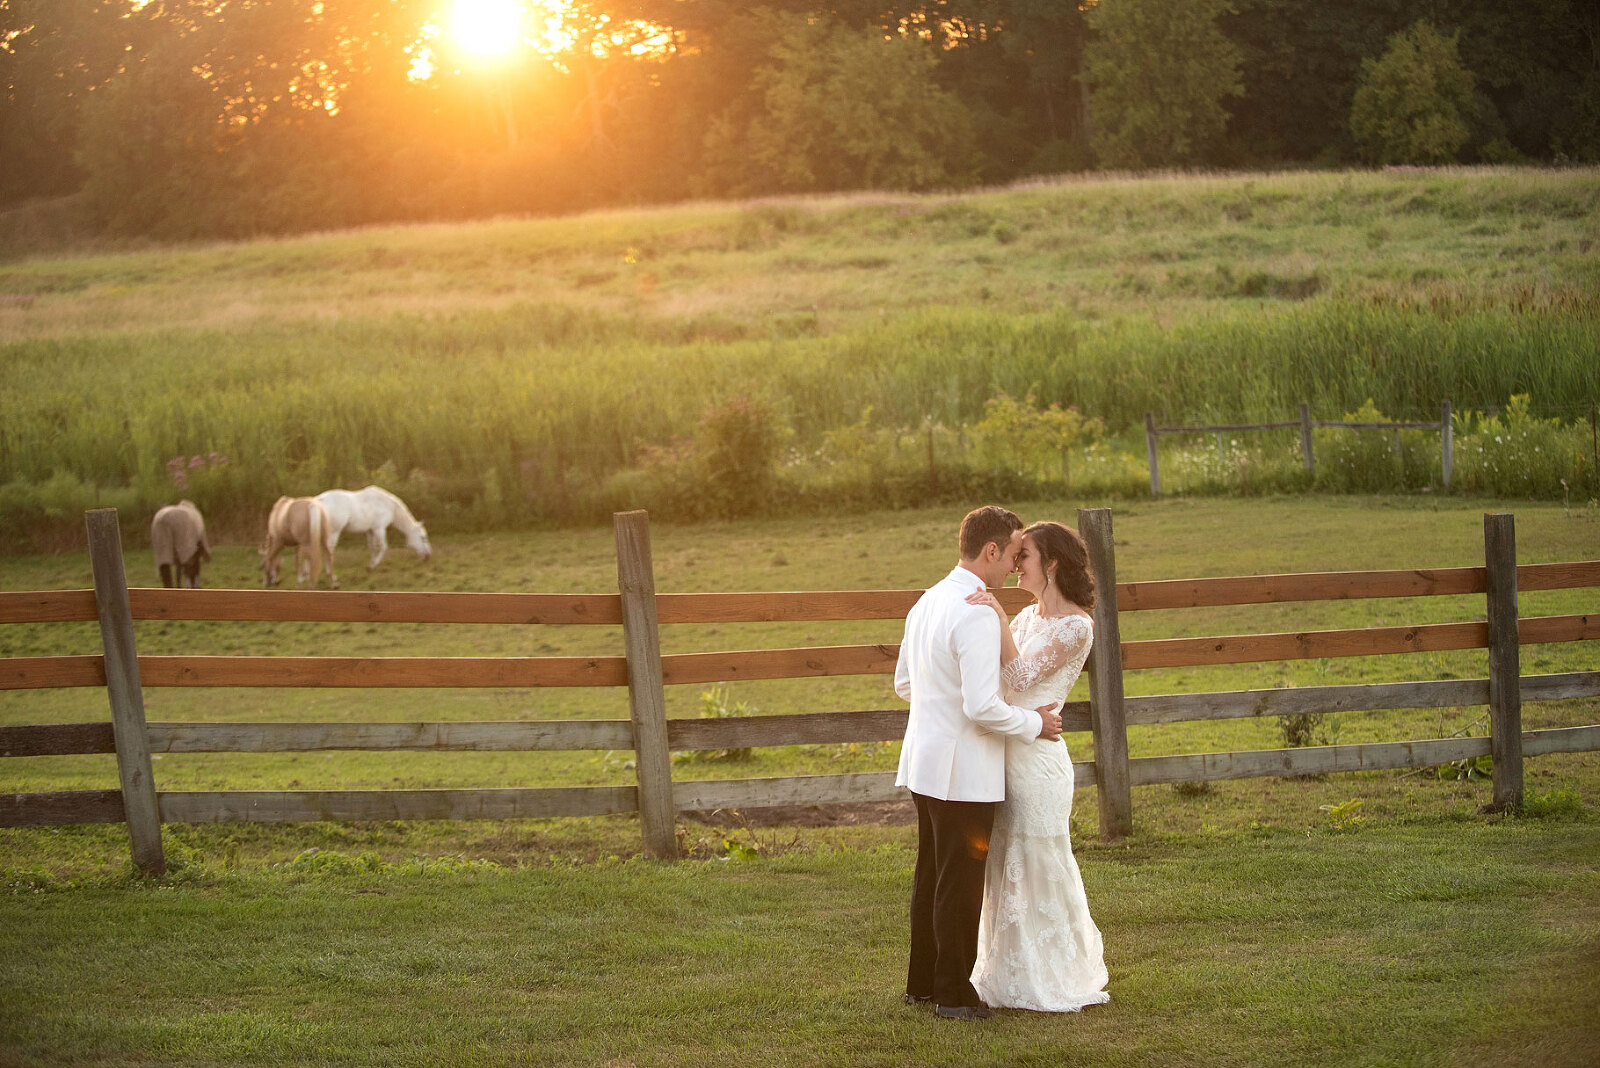 A bride and groom embrace as the sun sets at misty farm ann arbor